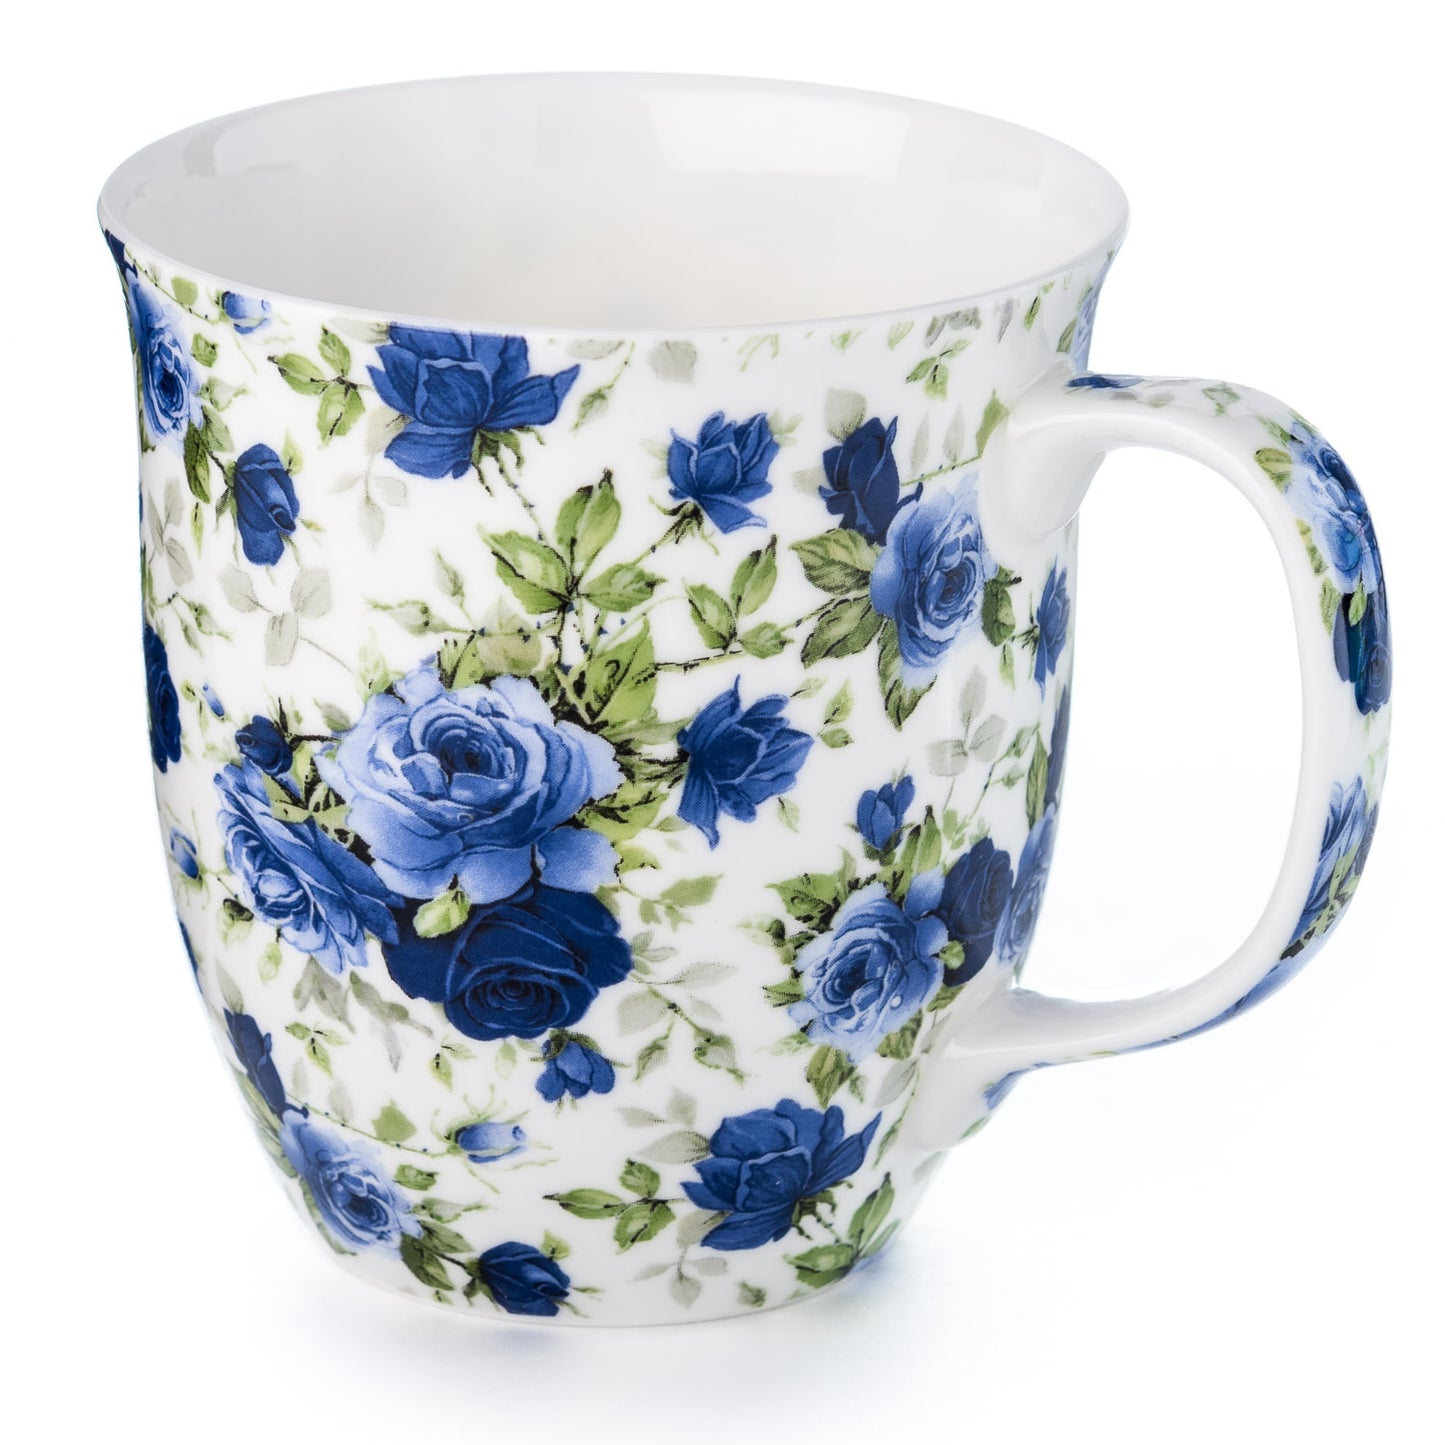 Pretty Chintzy 'Dark Blue Roses' Java Mug